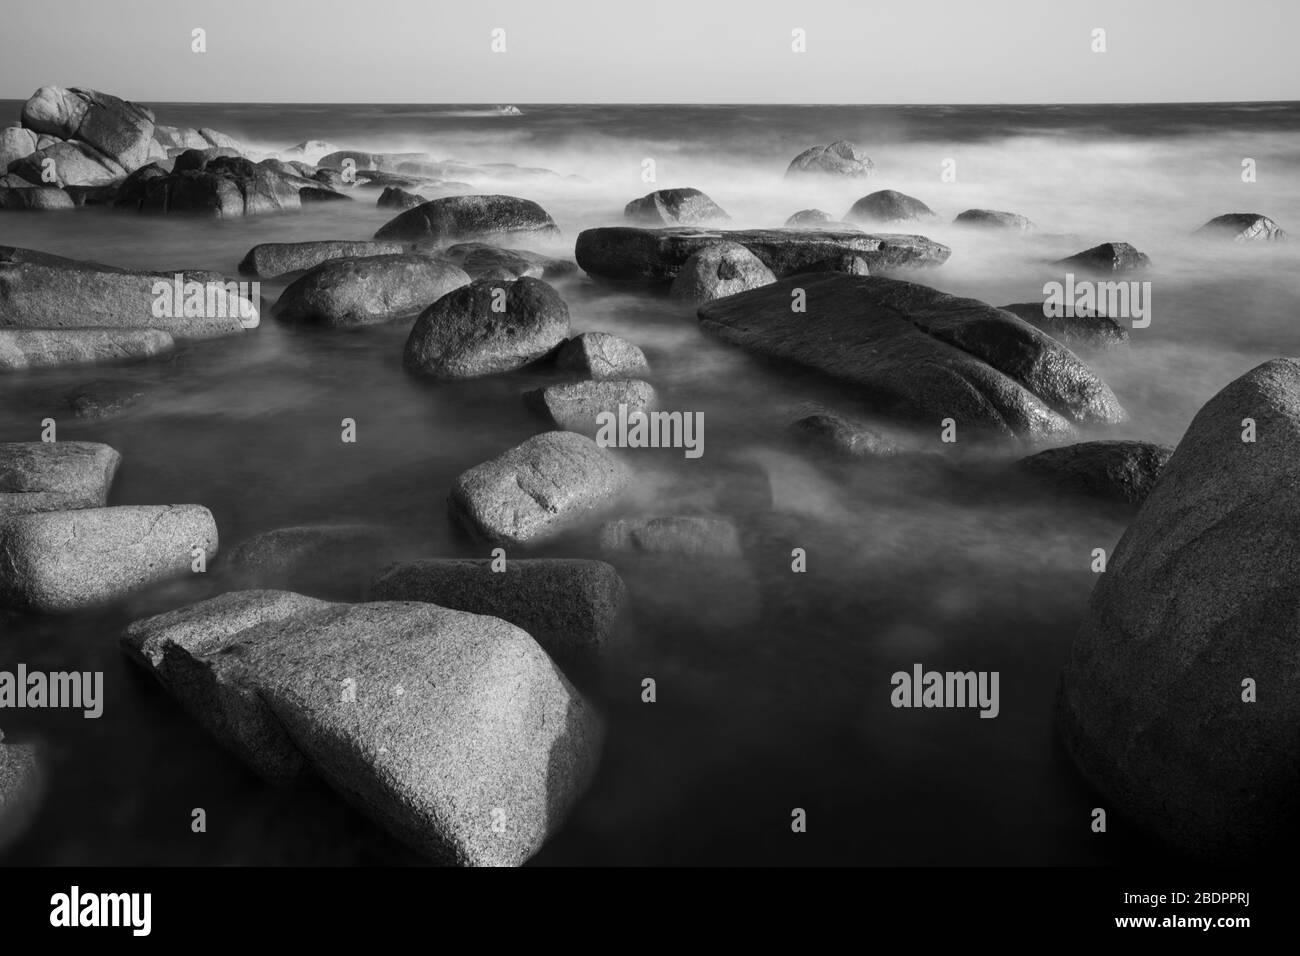 Noir / blanc, beau paysage de rochers sur la mer, longue exposition, côte est Corée Banque D'Images